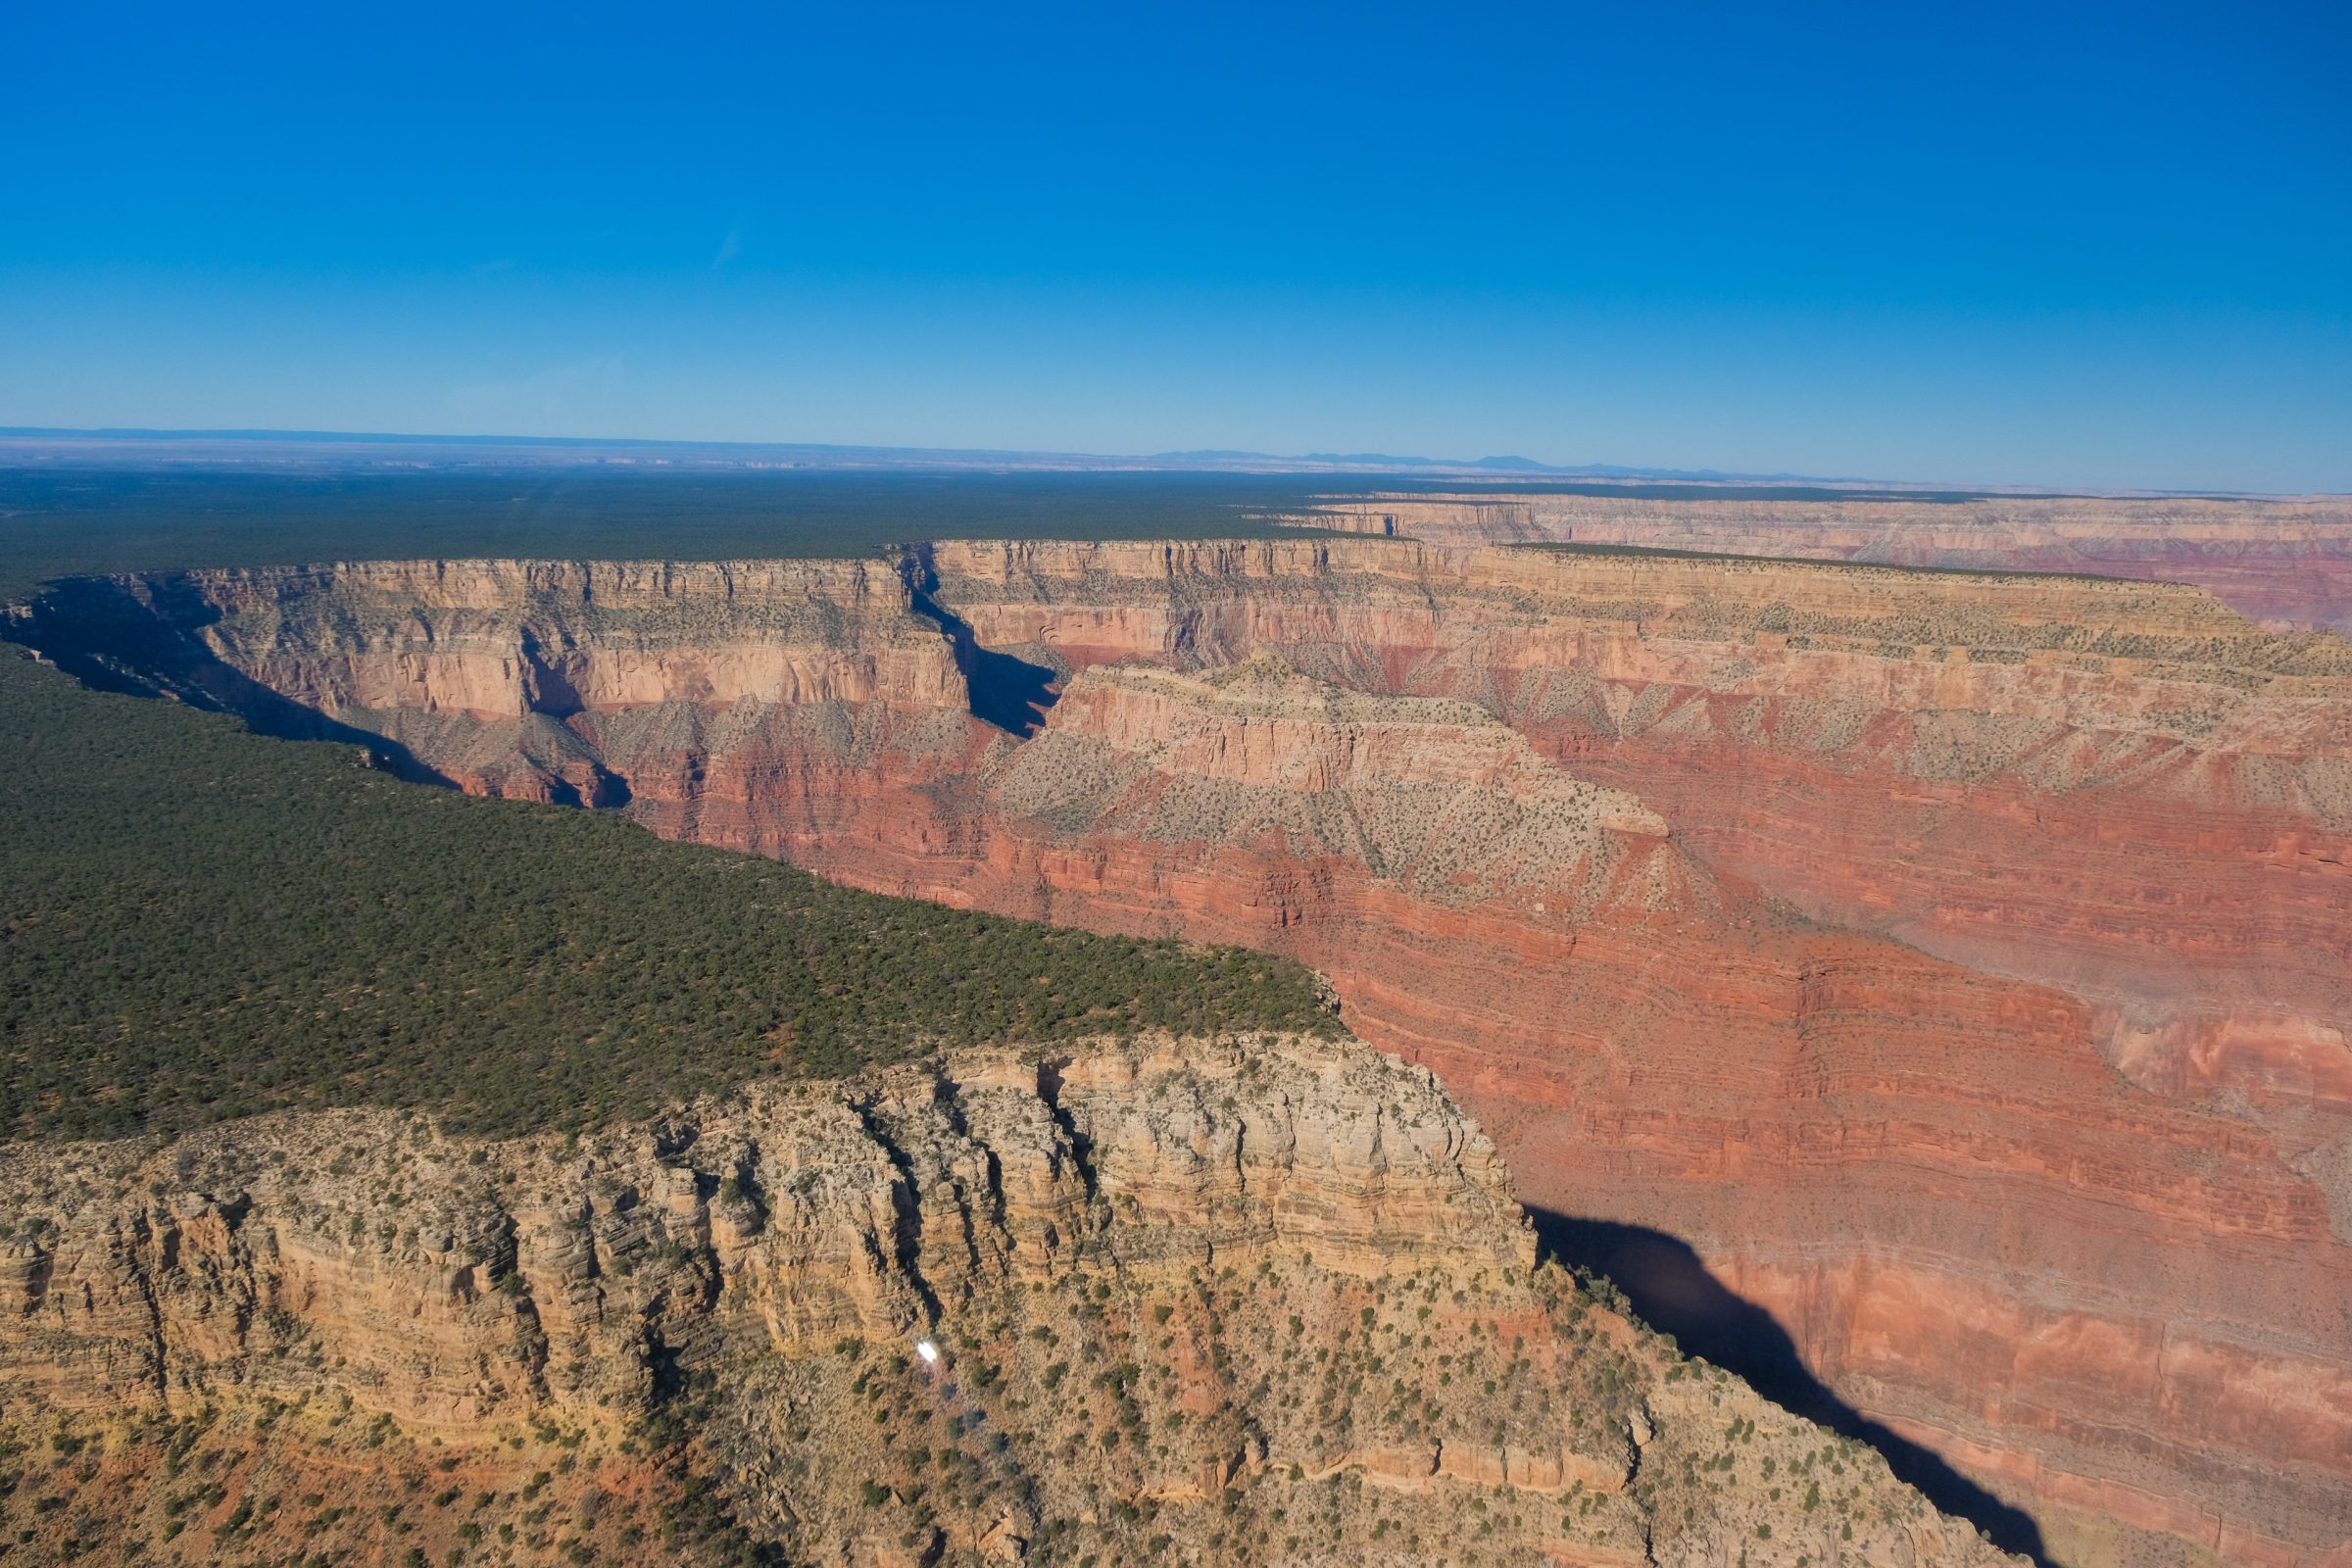 De south rim (zuidkant) van de Grand Canyon vanuit de helikopter